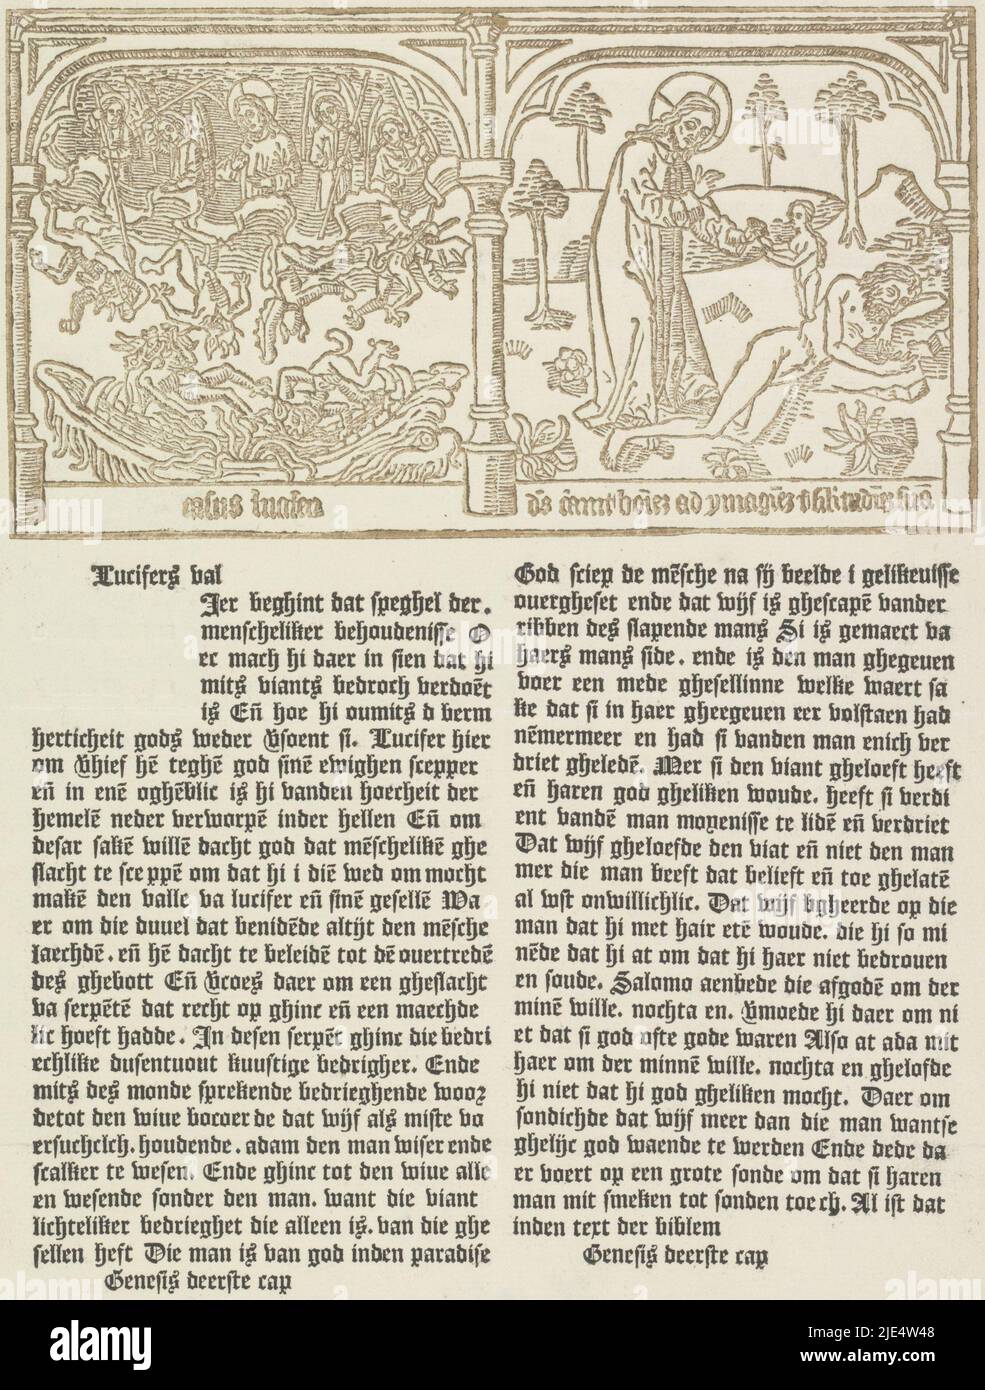 A la izquierda la caída de Lucifer (Satanás) y a la derecha la creación de Eva de una costilla de Adán. En un marco dos líneas de texto latino. Debajo de dos columnas de texto holandés, Caída de Lucifer (Satanás) y la creación de Eva., imprenta: Cornelis van Noorde, (mencionado en el objeto), impresora: Johannes Enschedé (I), (mencionado en el objeto), Haarlem, 1762, papel, impresión de tipografía, al 332 mm x al 229 mm Foto de stock